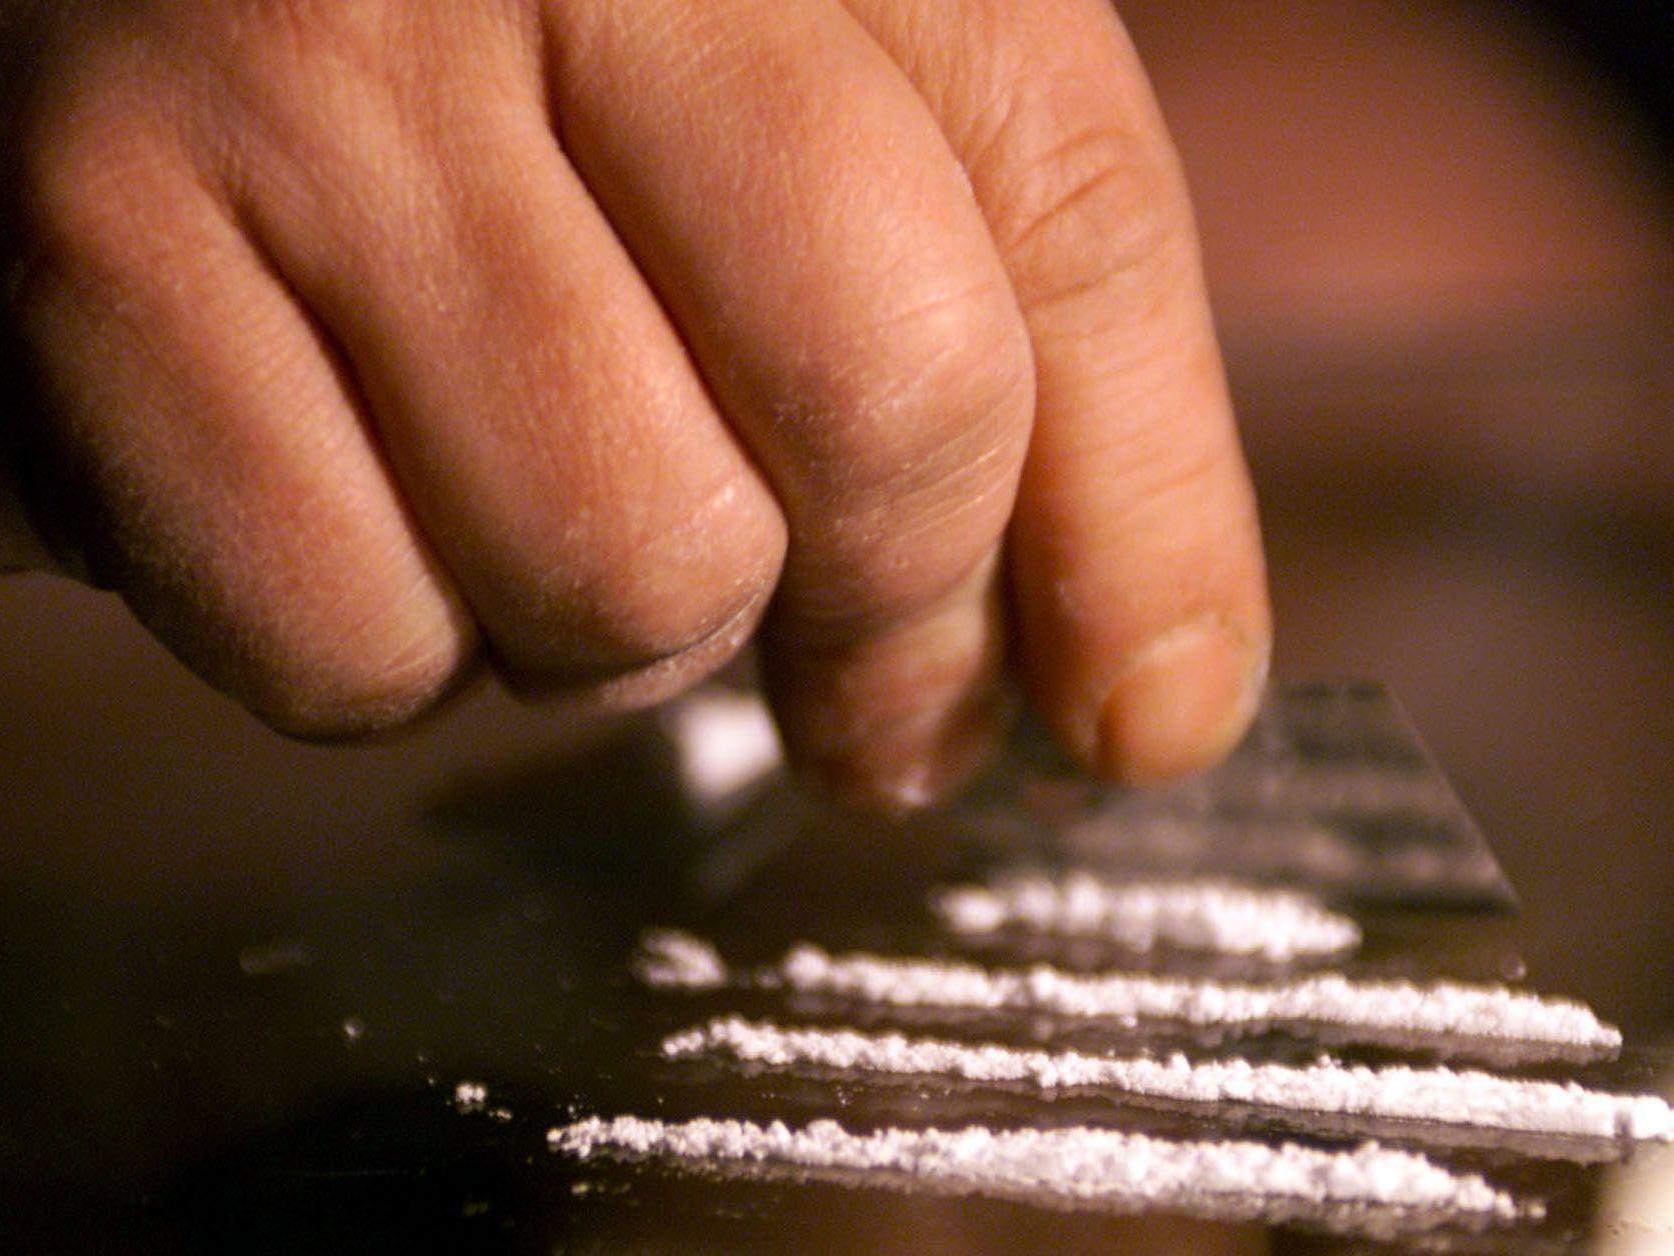 Bei einer Hausdurchsuchung wurden 40g Kokain sichergestellt.